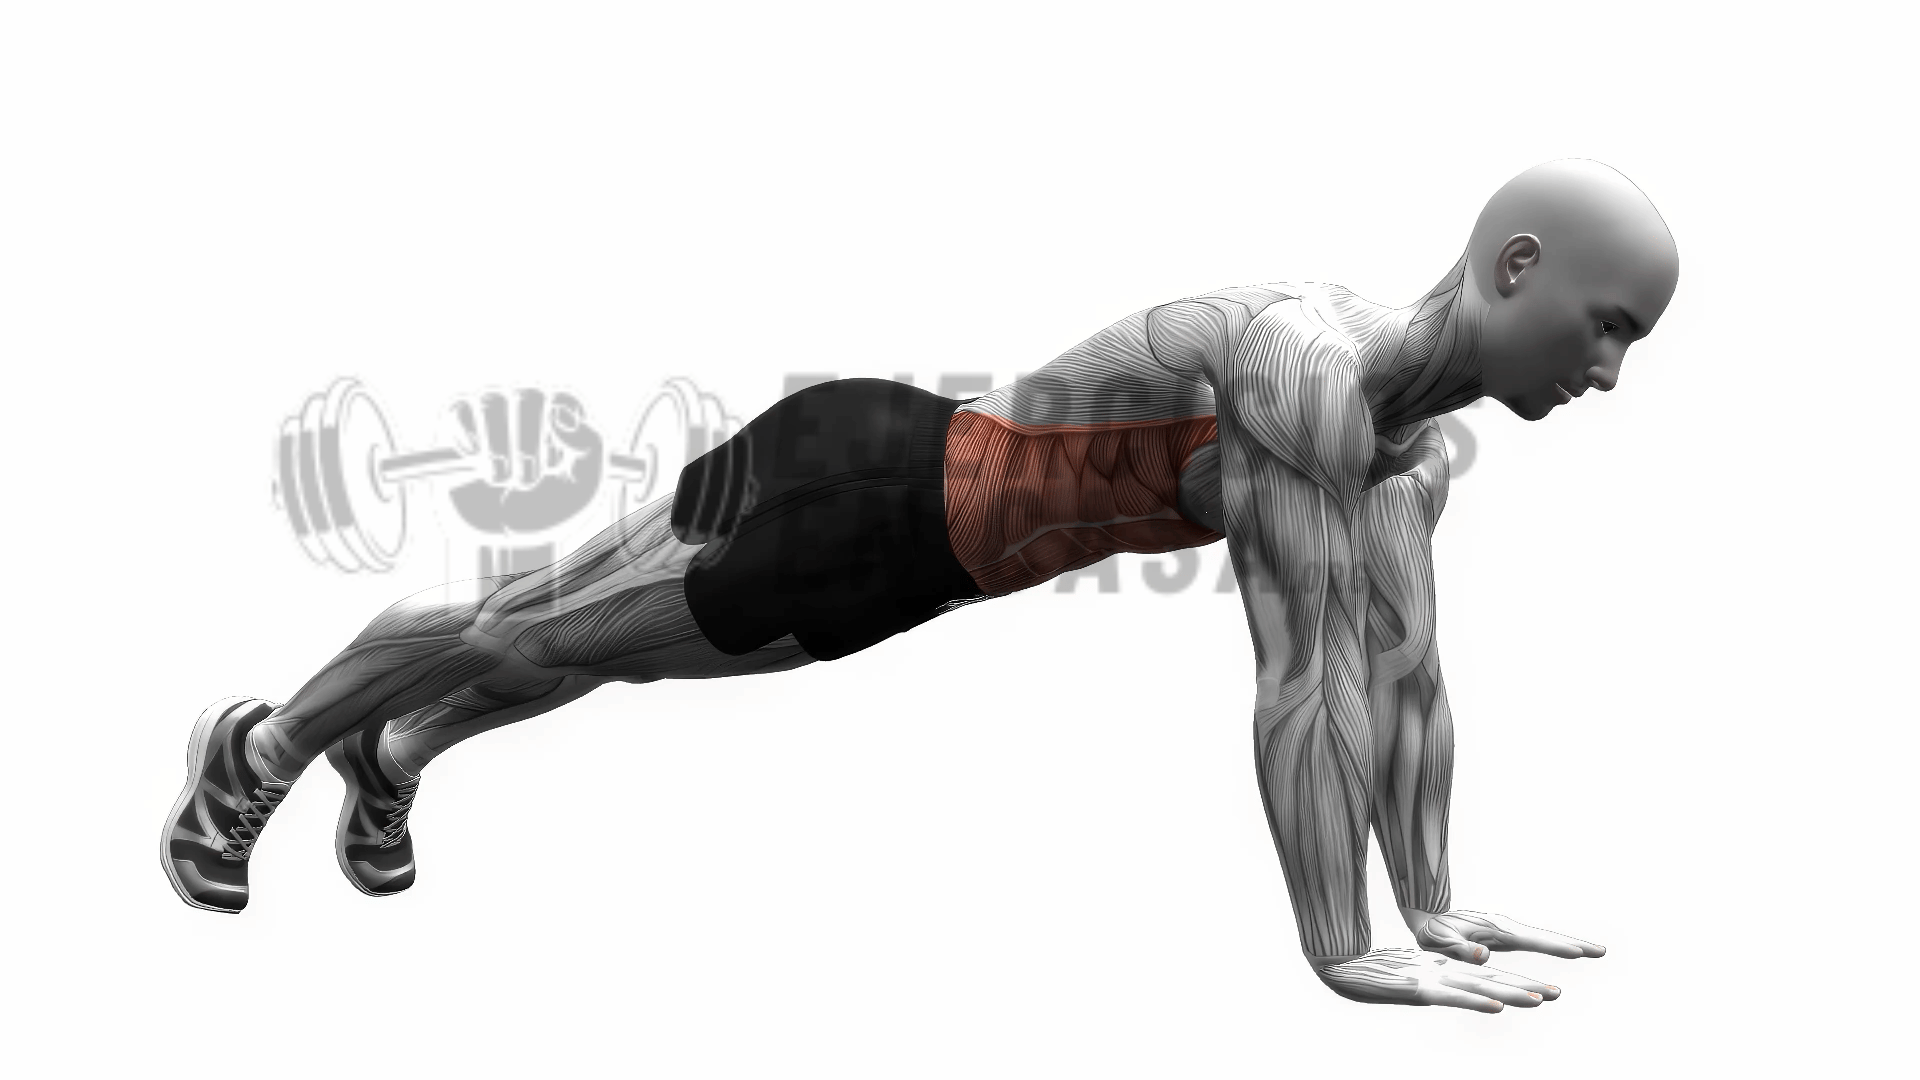 plancha high plank rutinas de entrenamiento ejercicio fitness cardiovascular con peso corporal